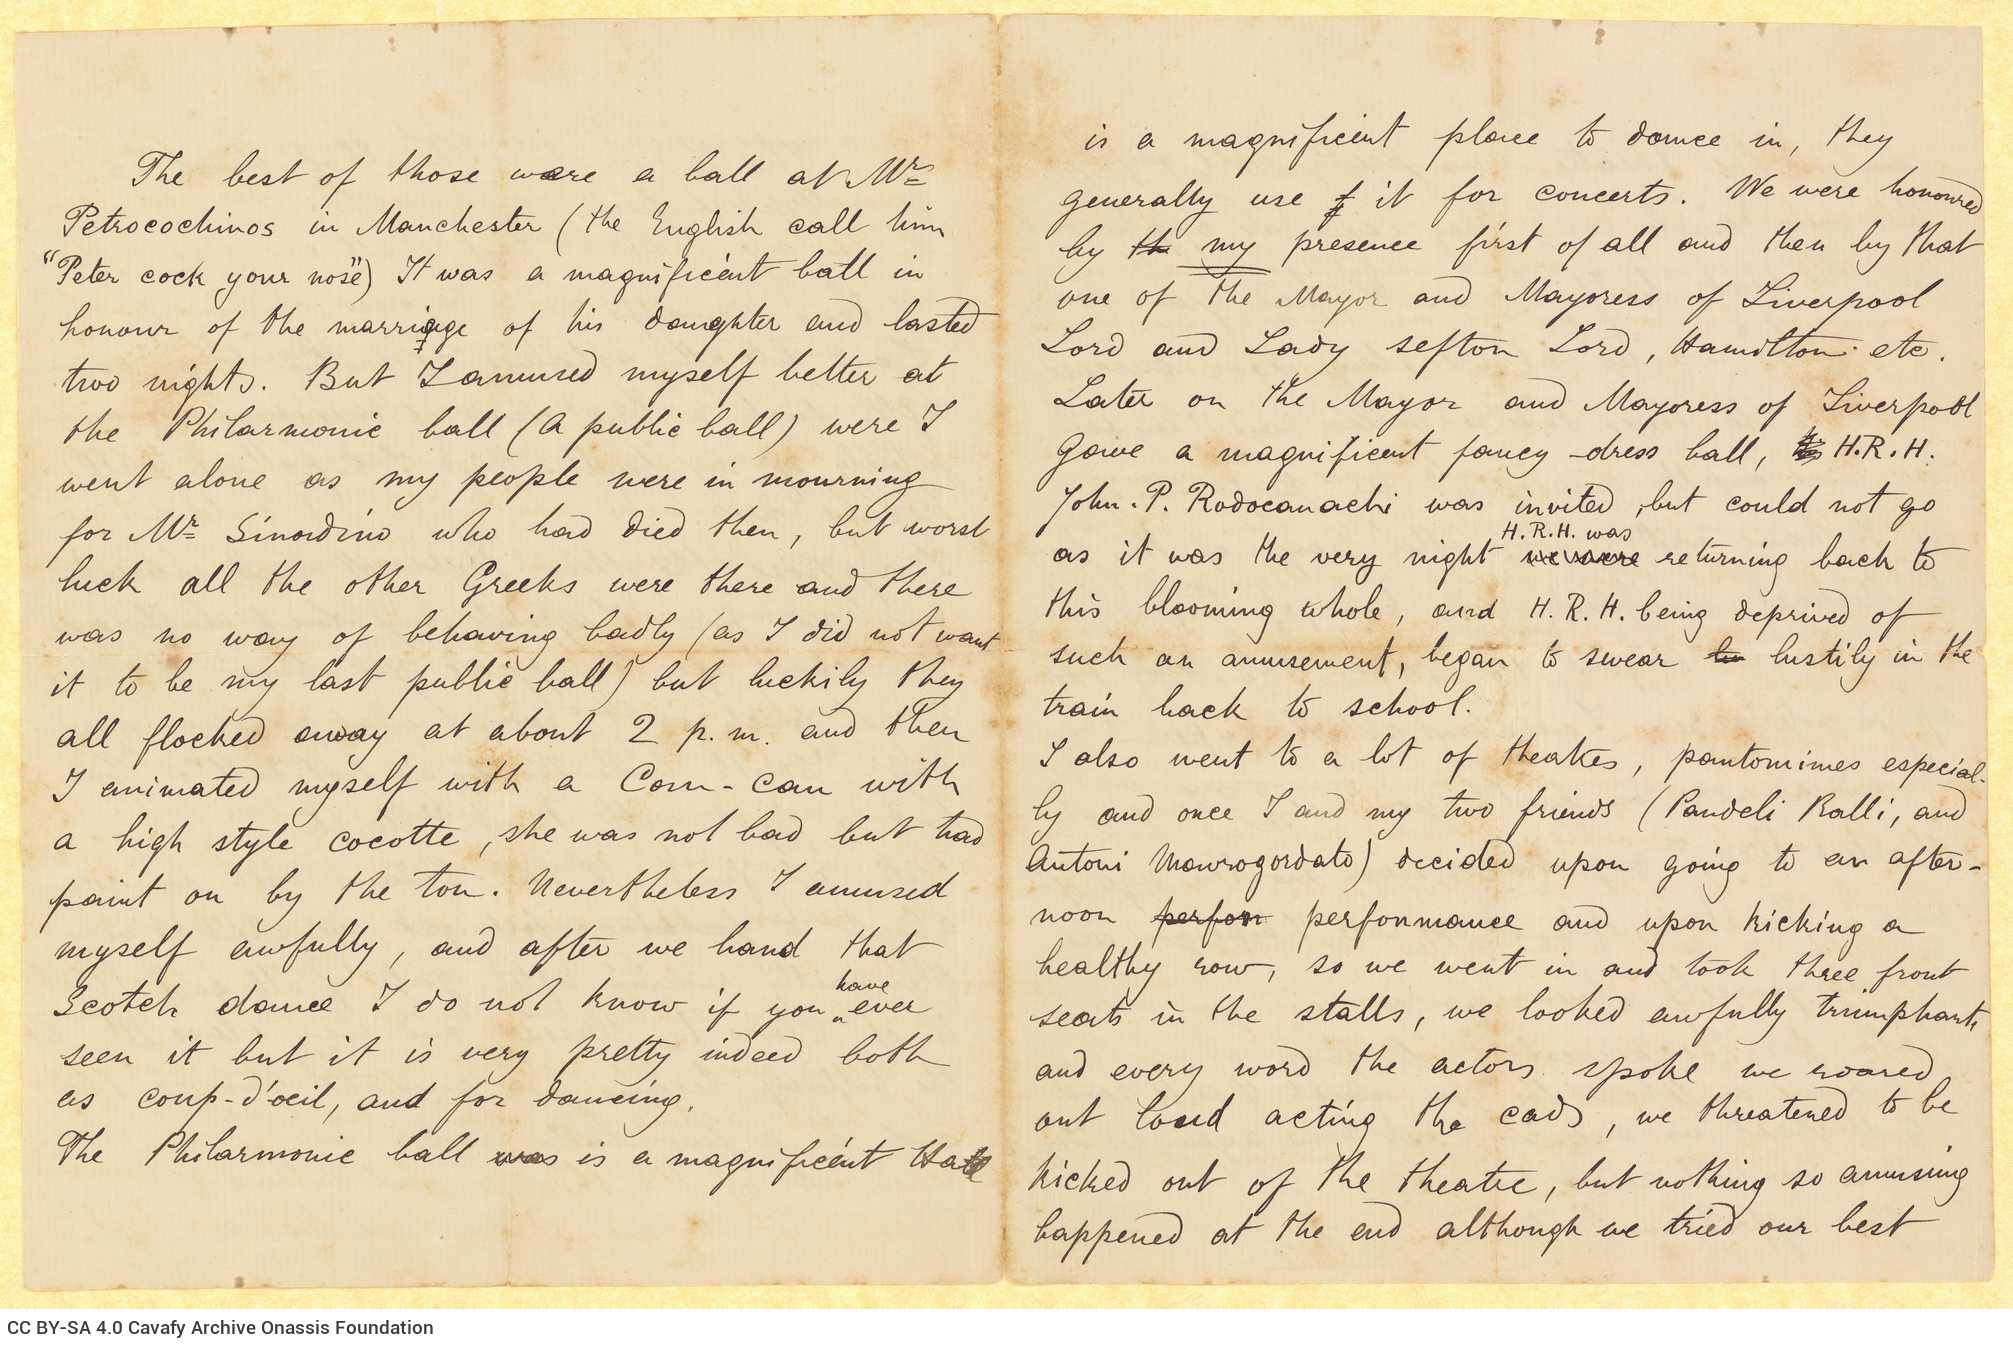 Χειρόγραφη επιστολή του John [Ροδοκανάκη] προς τον Καβάφη, σε τετρασέλ�